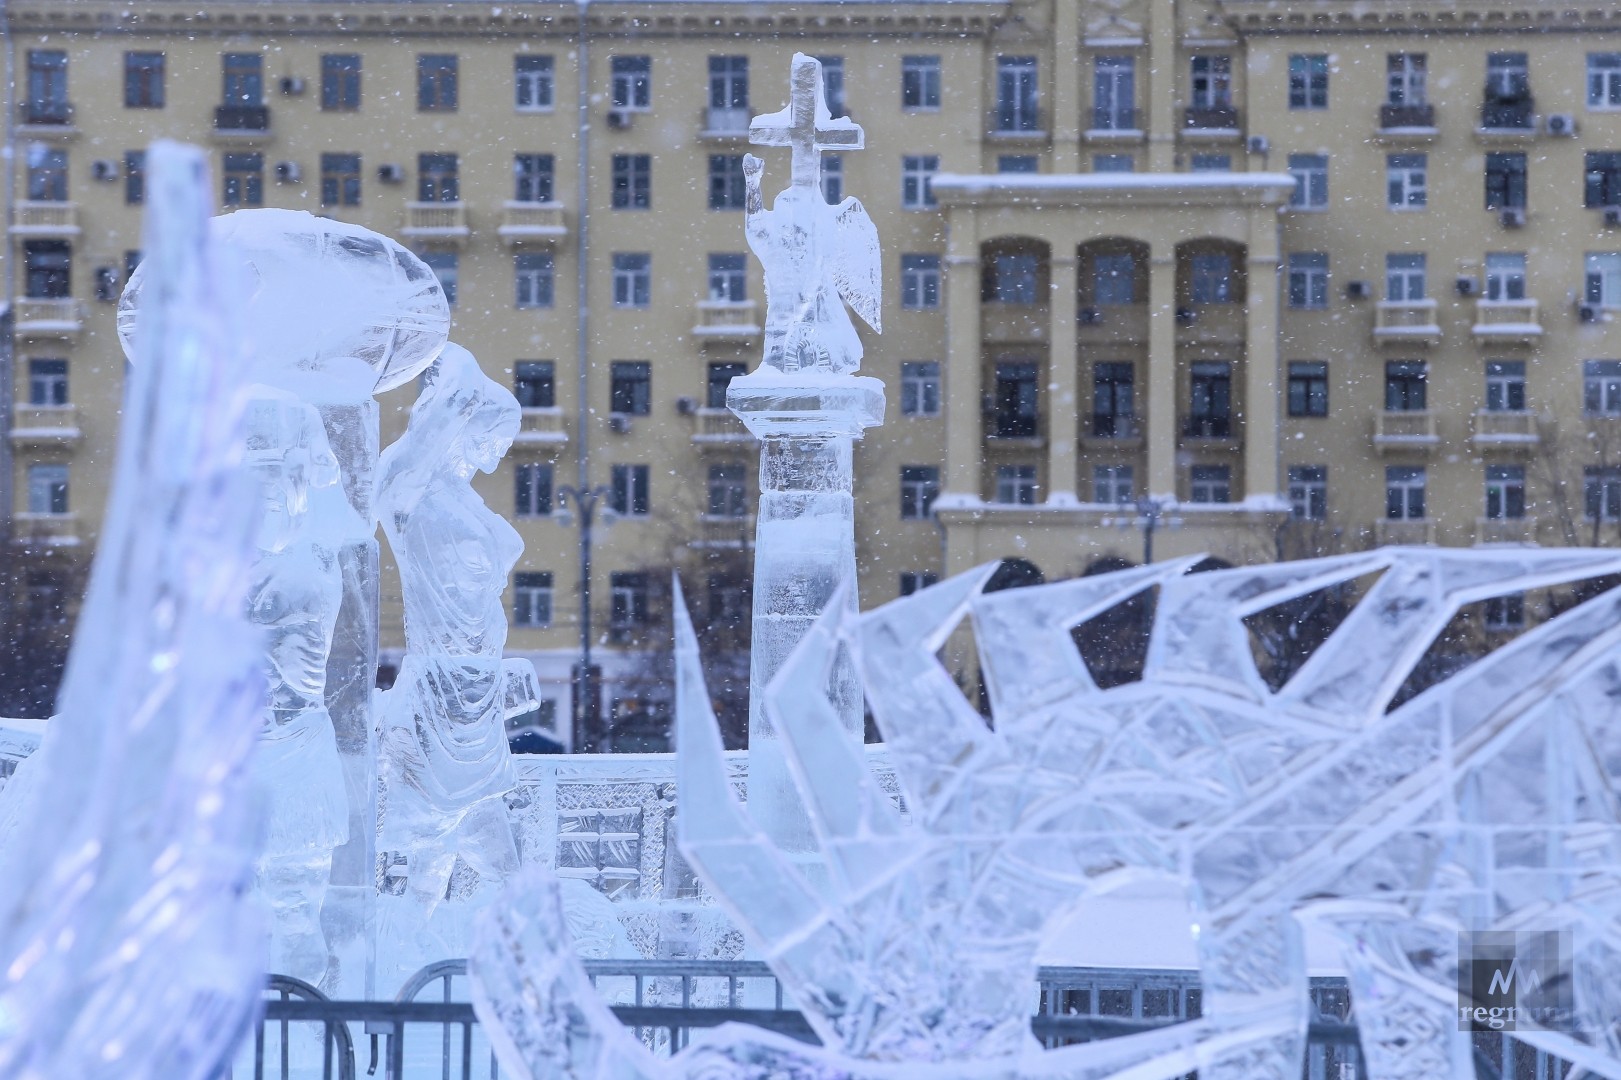 Фестиваль «Снег и лёд в Москве». Парк Горького